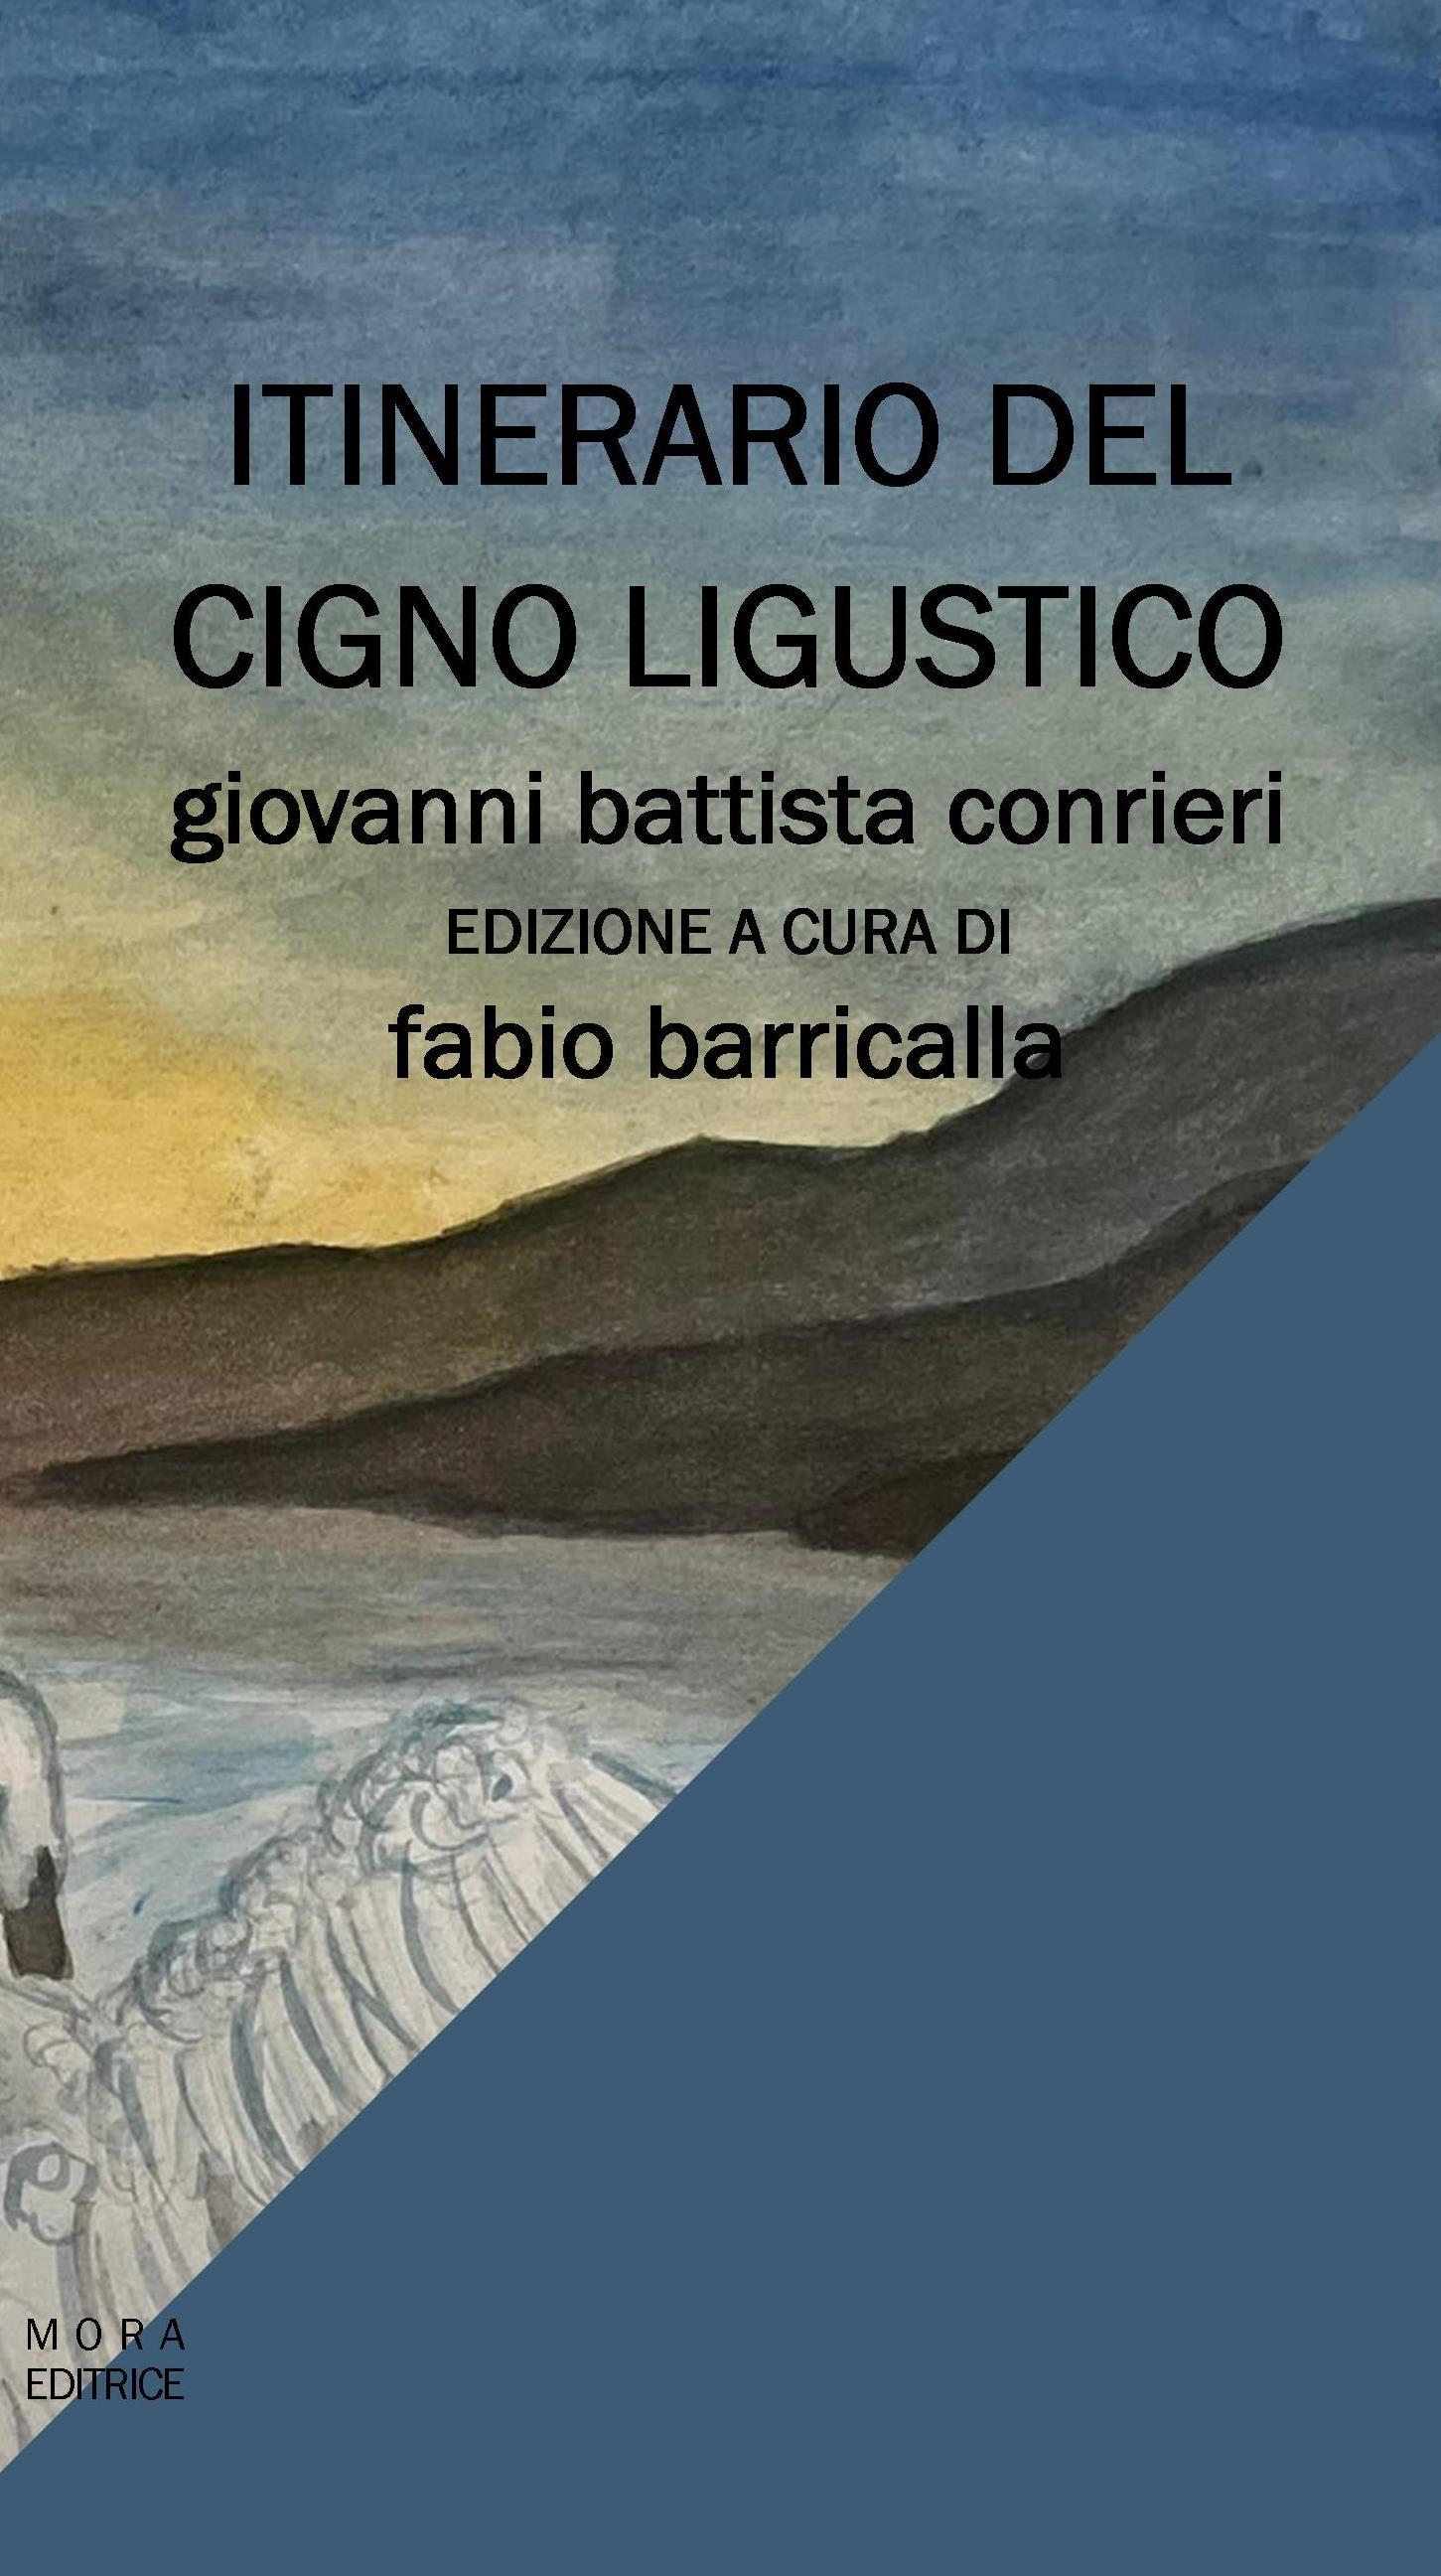 Arriva in libreria "Itinerario del cigno Ligustico" l'opera omnia del medico saremese Giovan Battista Conrieri